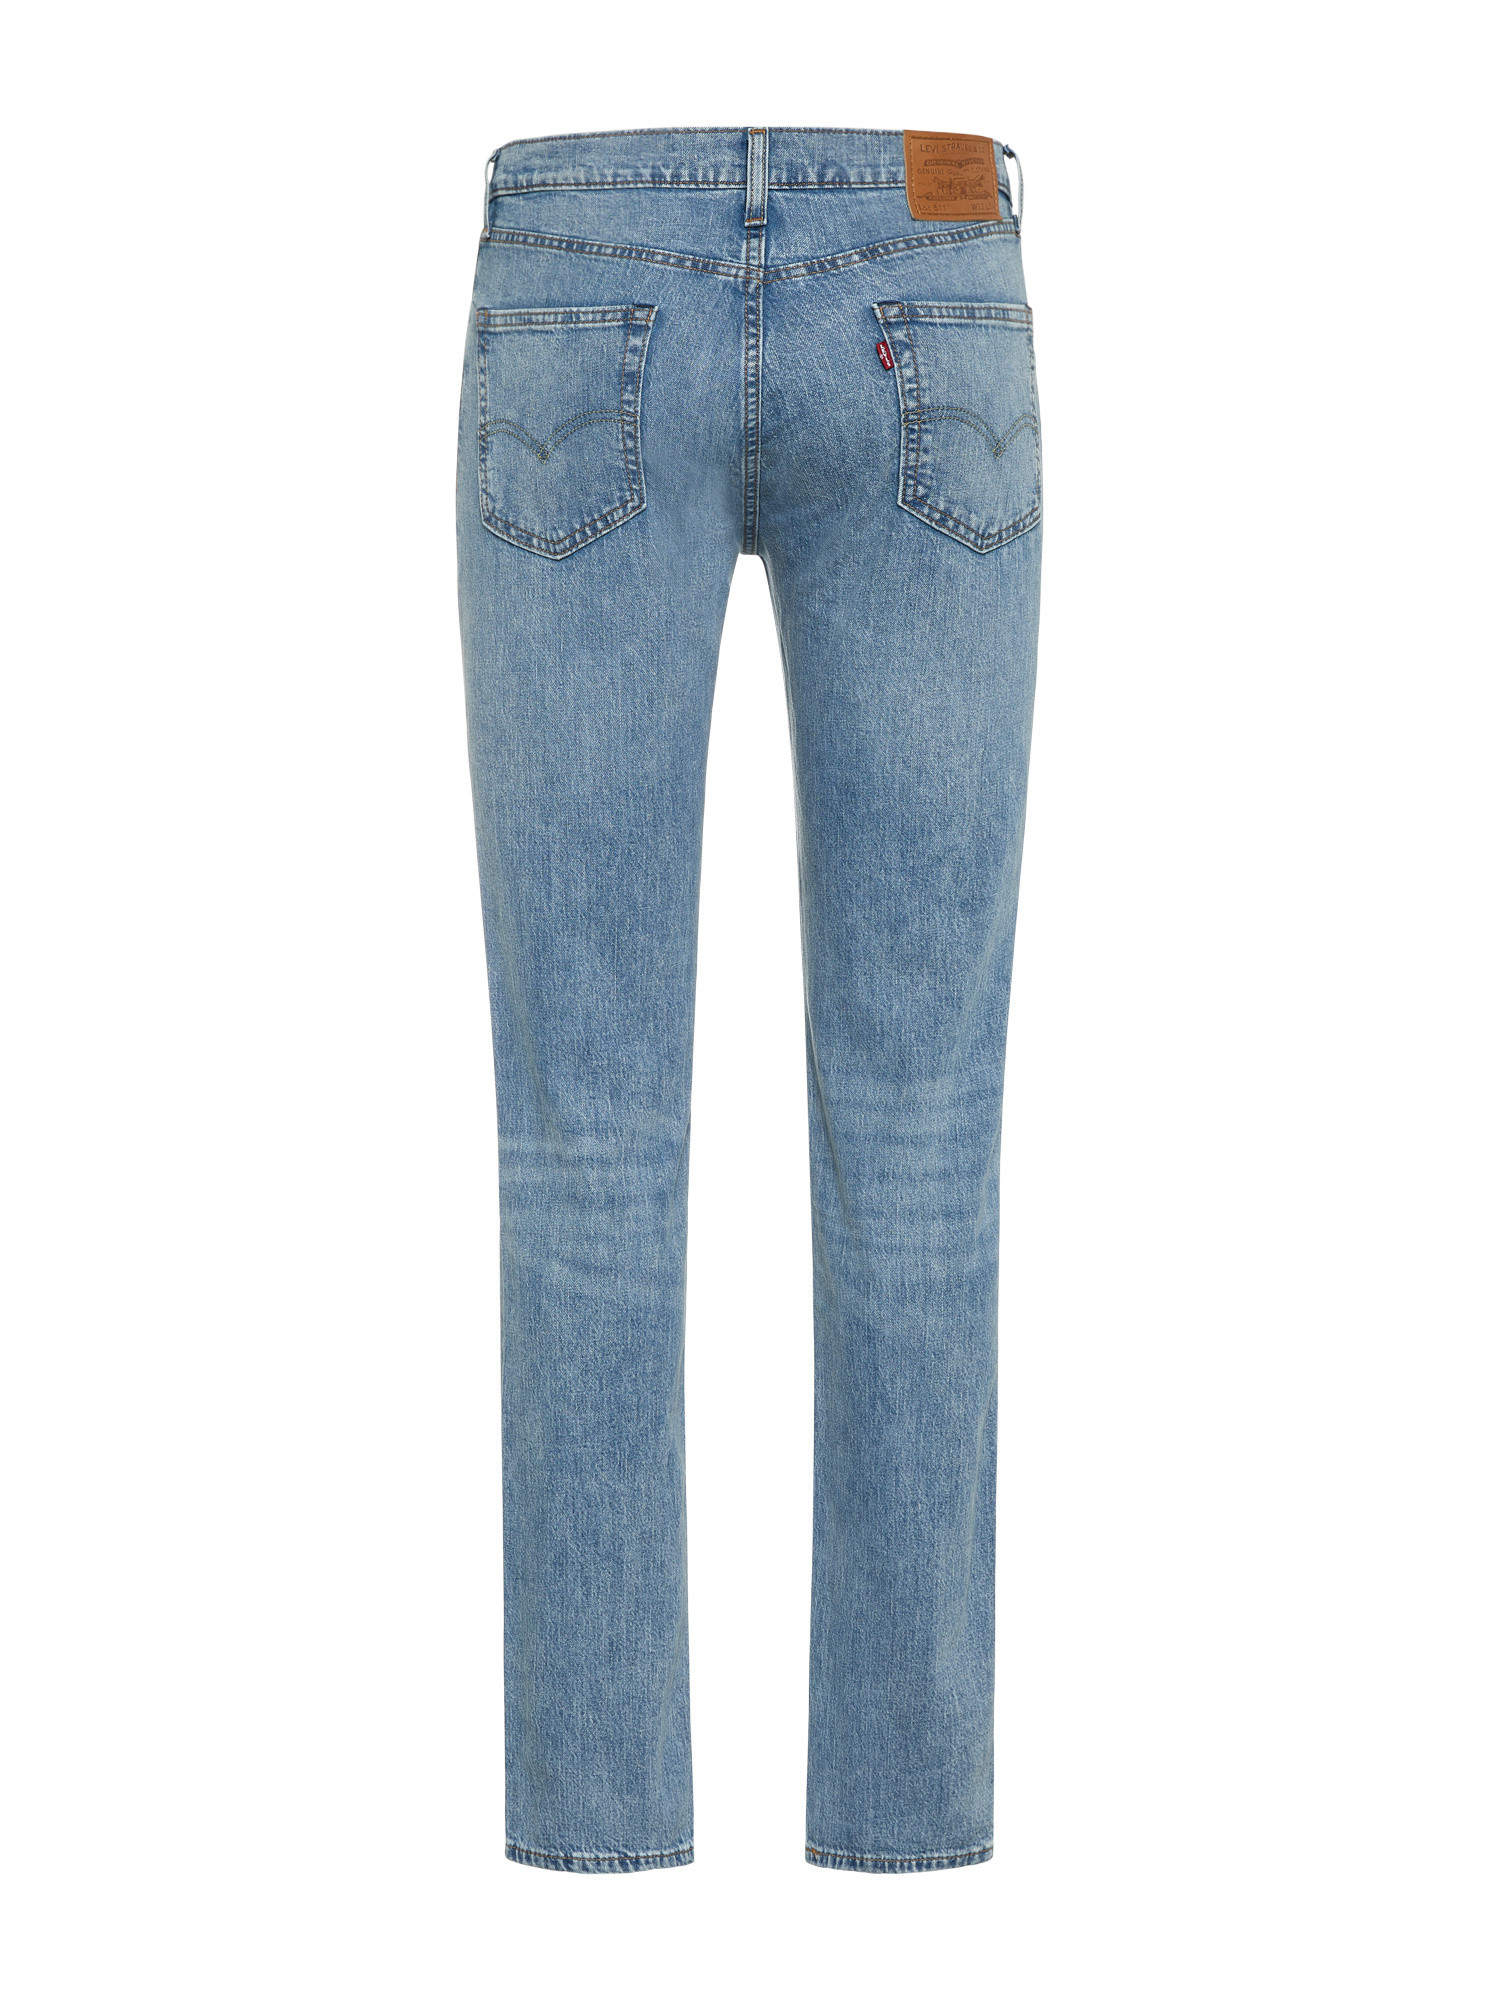 Levi’s - Slim fit 511 jeans, Light Blue, large image number 1